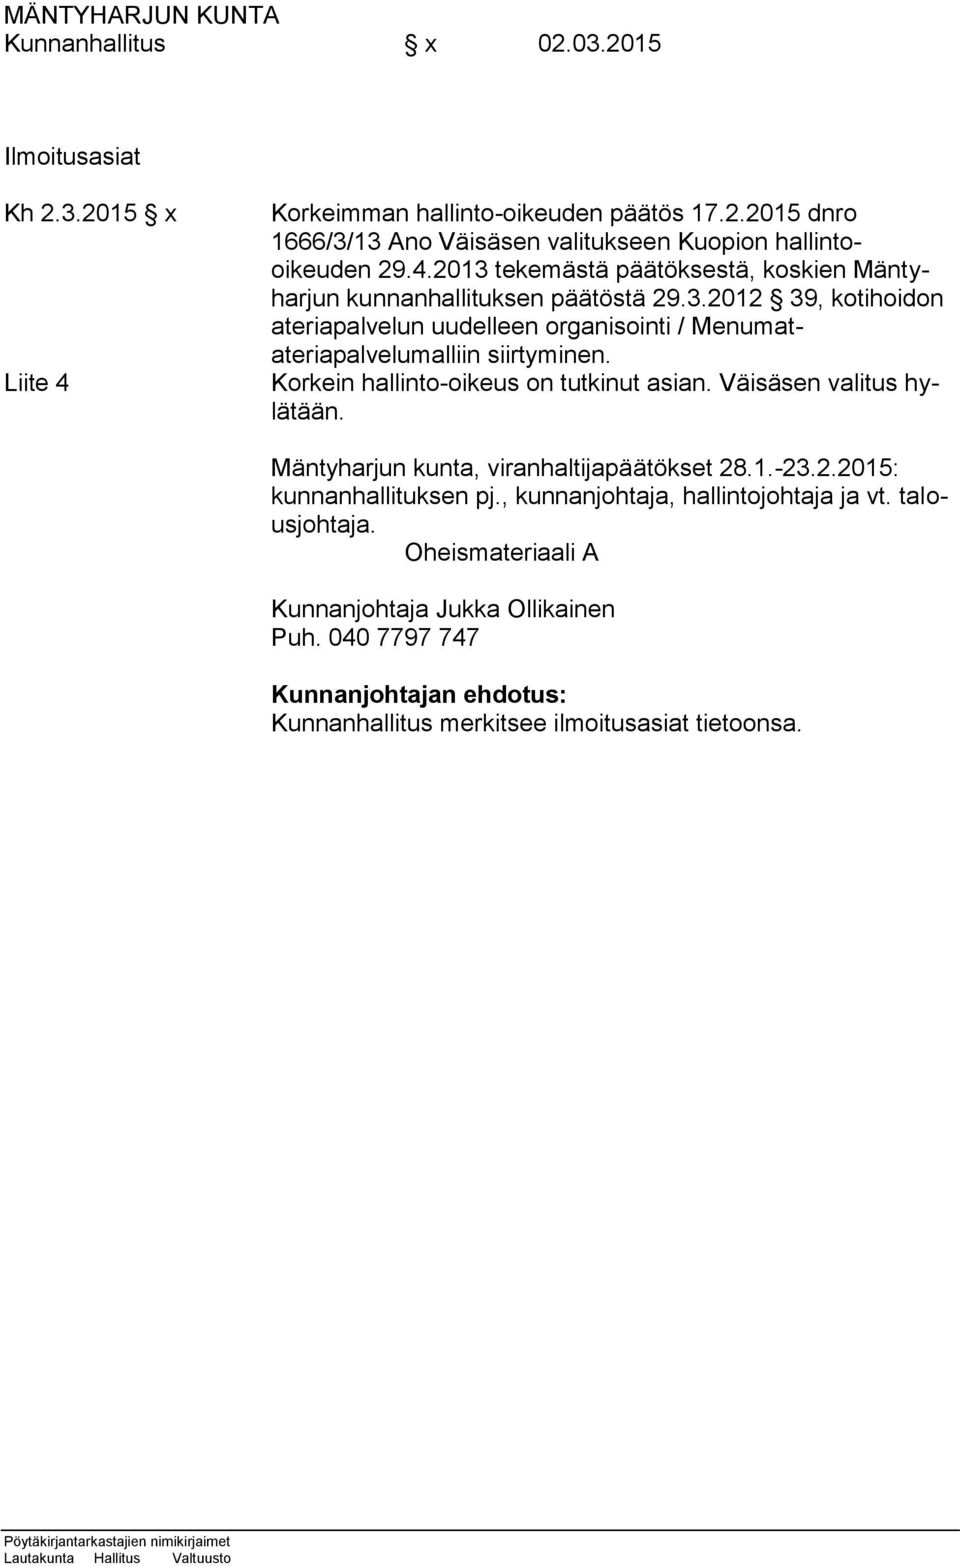 Korkein hallinto-oikeus on tutkinut asian. Väisäsen valitus hylätään. Mäntyharjun kunta, viranhaltijapäätökset 28.1.-23.2.2015: kunnanhallituksen pj.